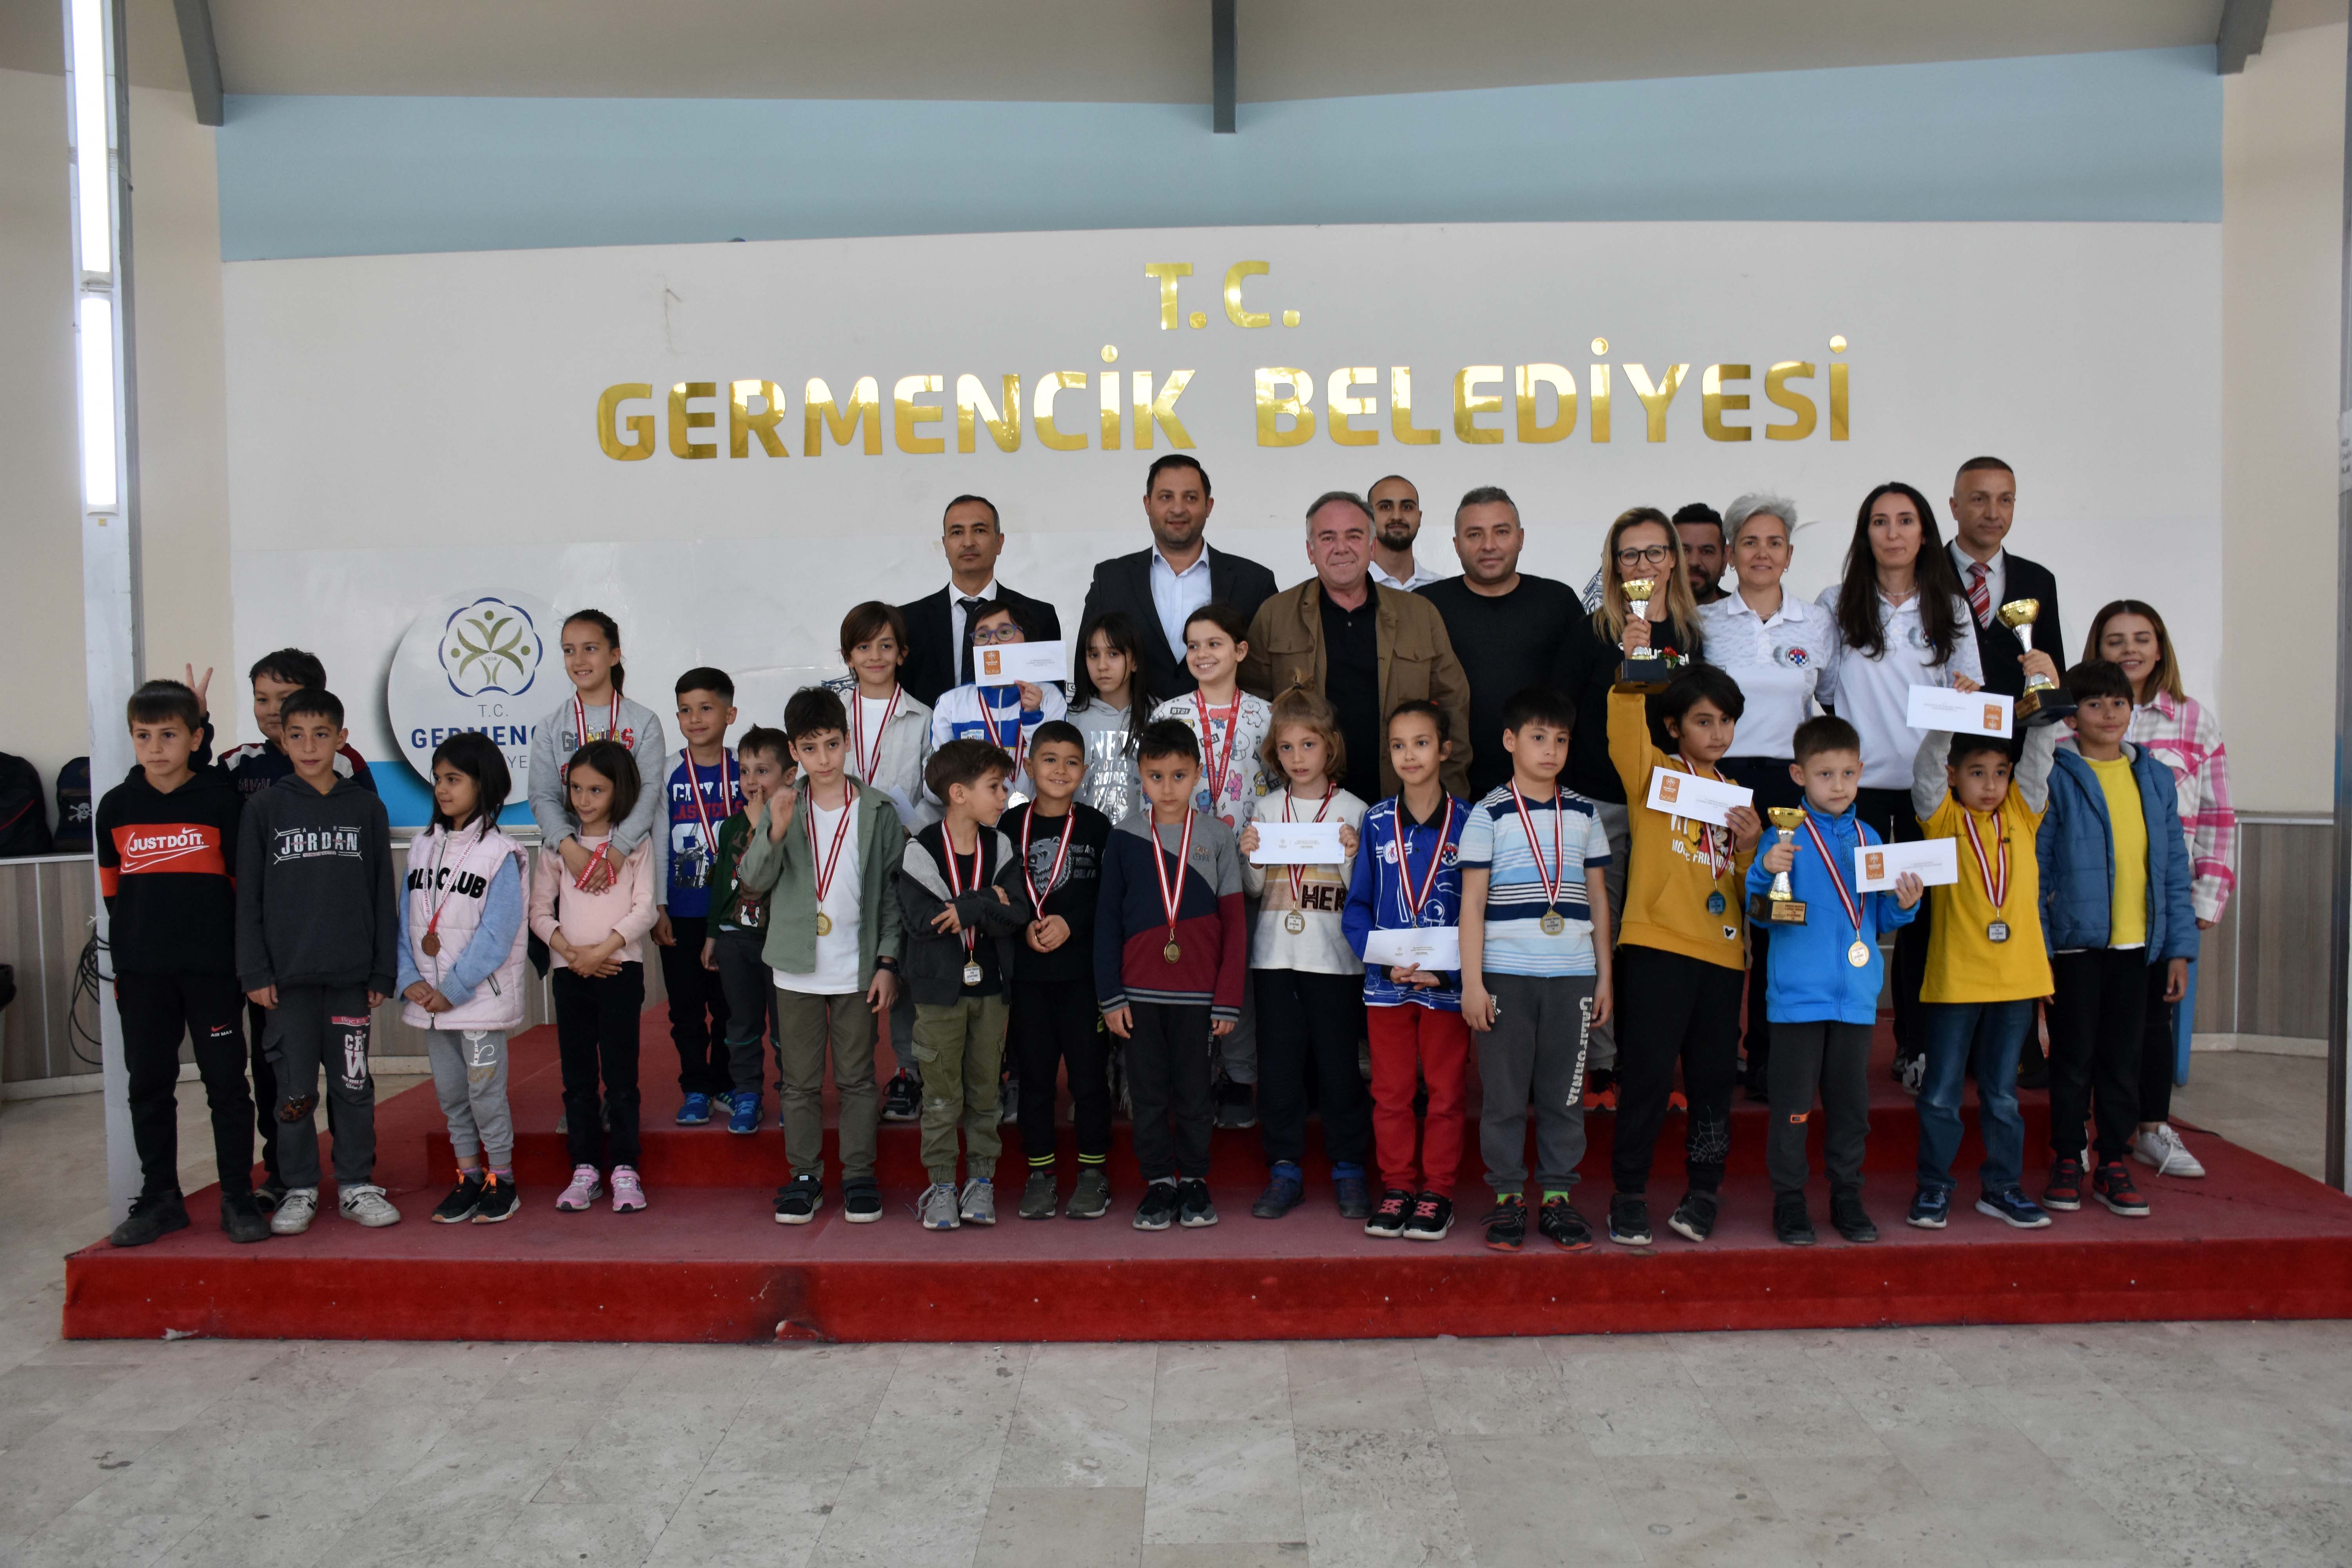 Germencik Belediyesi 6 satranç turnuvasına ev sahipliği yaptı